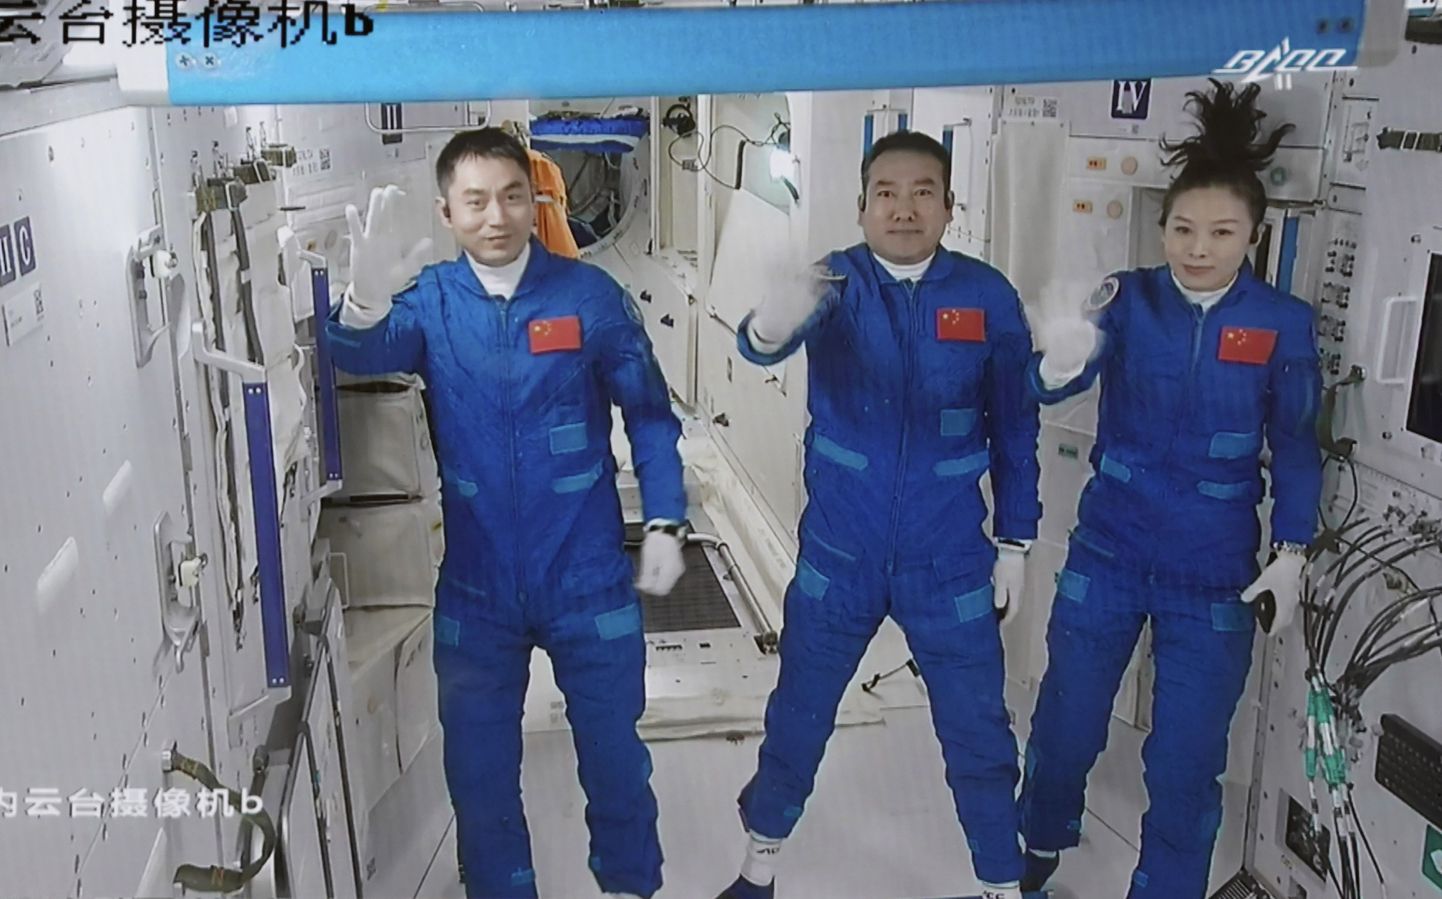 Экипаж из трех человек - командир корабля Чжай Чжиган, женщина-тайконавт Ван Япин и тайконавт Е Гуанфу, для которого это будет первый полет в космос, - должен проработать на орбите шесть месяцев.